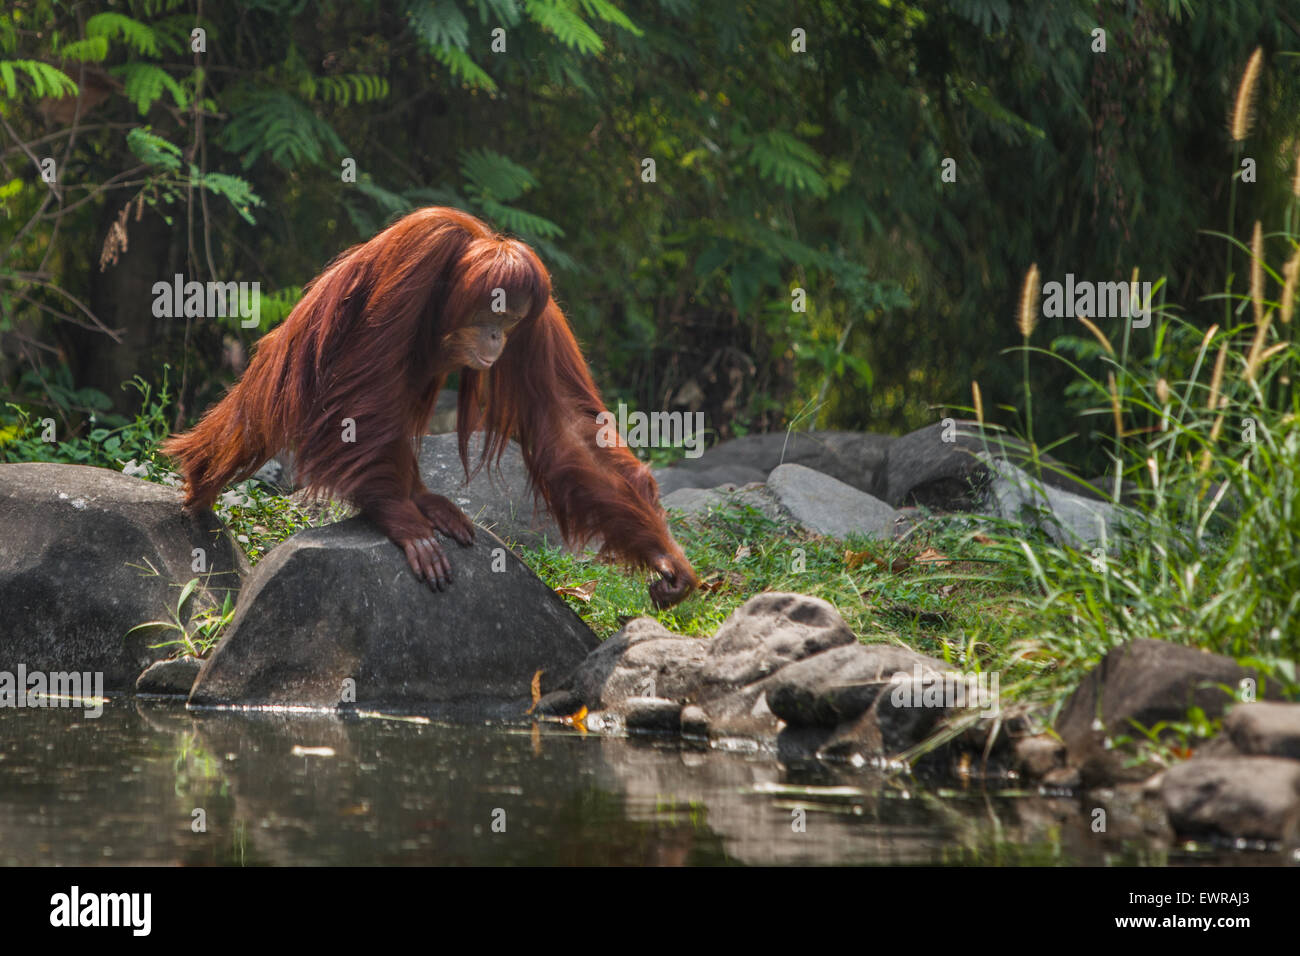 Sumatran orangutan (Pongo abelii) at Schmutzer Primate Centre, Ragunan Zoo, Jakarta. Stock Photo